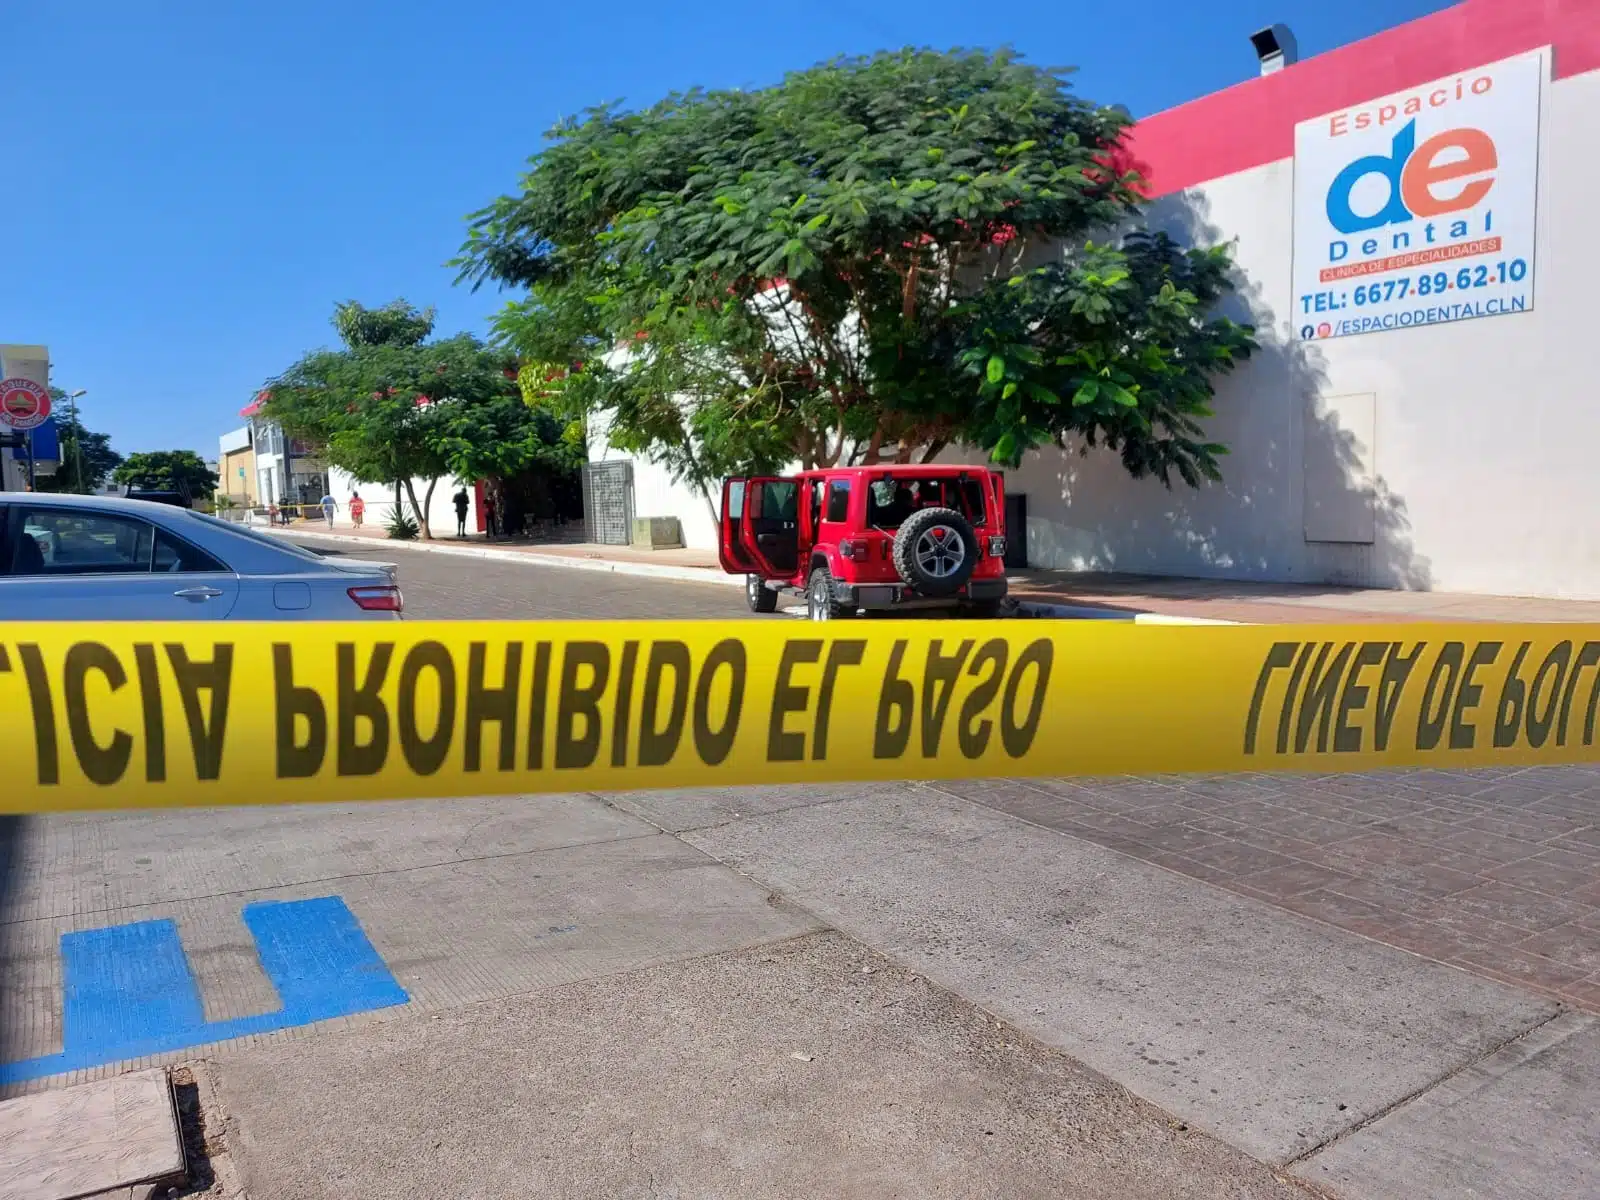 Camioneta Jeep Rubicón baleado en Culiacán